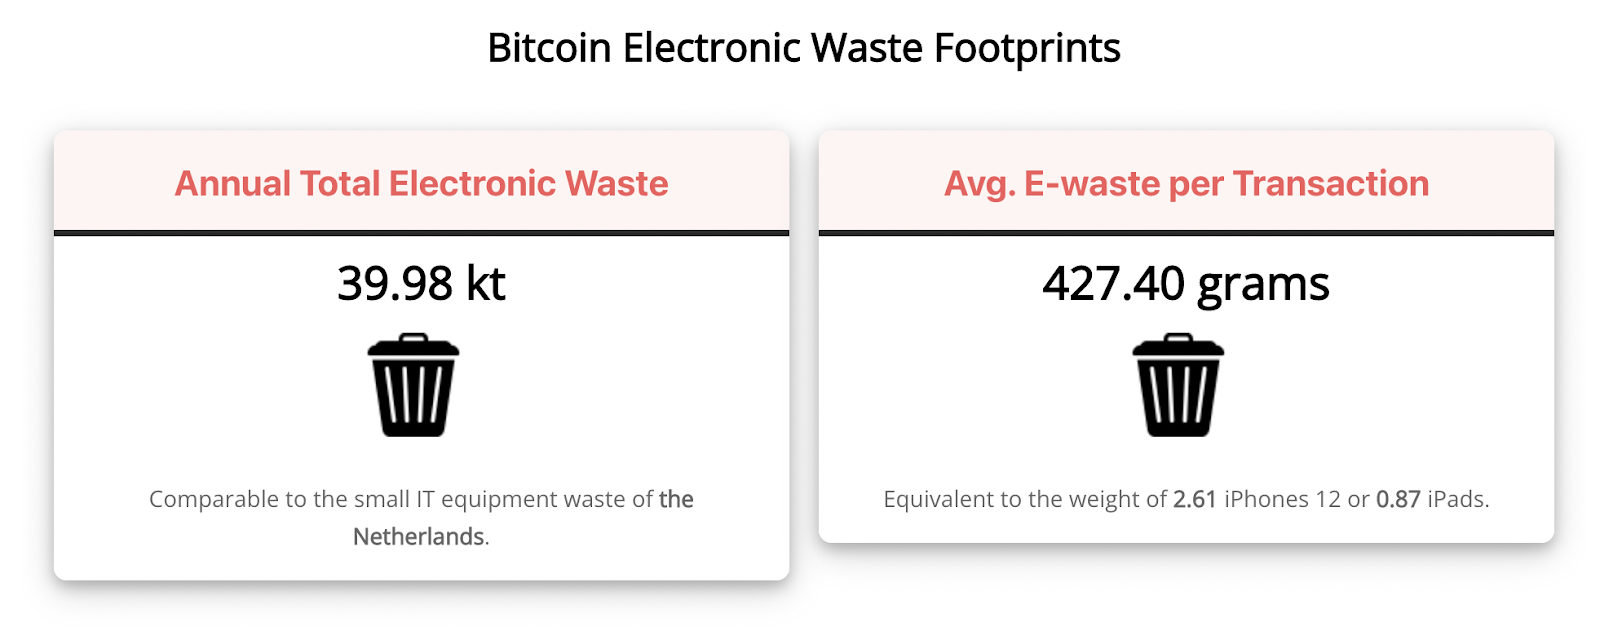 bitcoin waste footprint